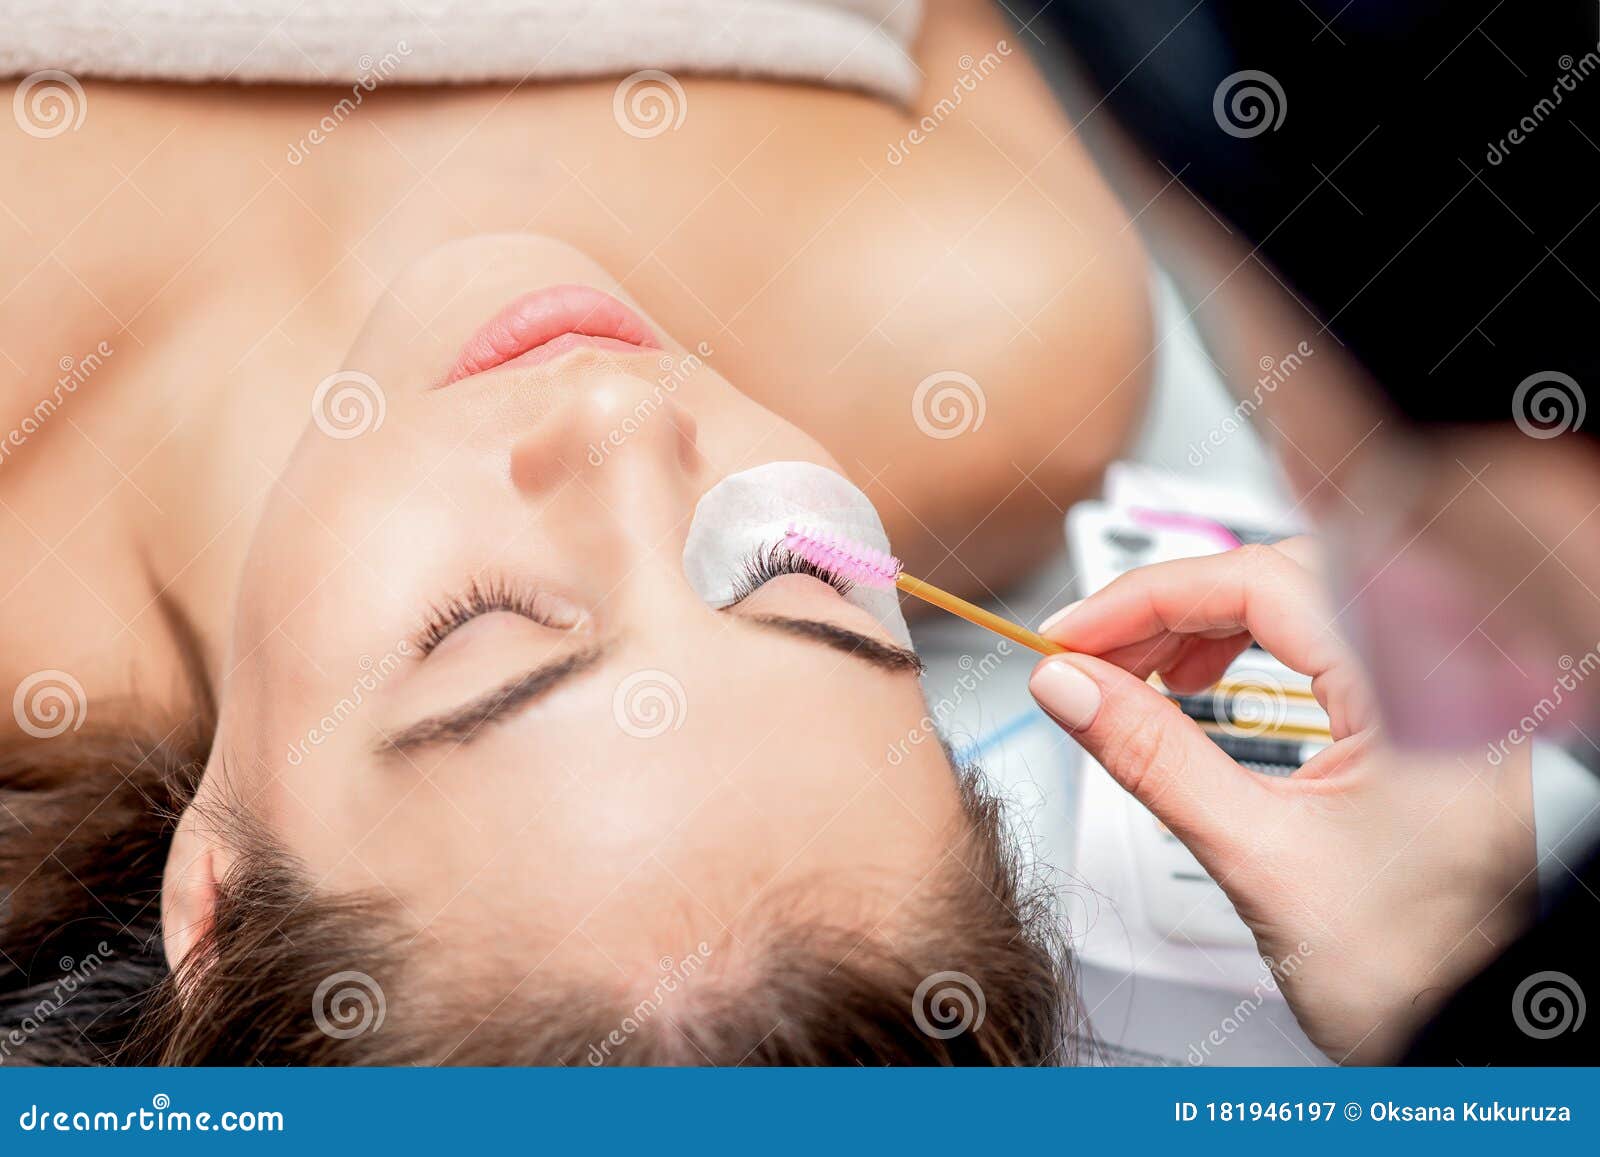 cosmetologist hand making lengthening lashes